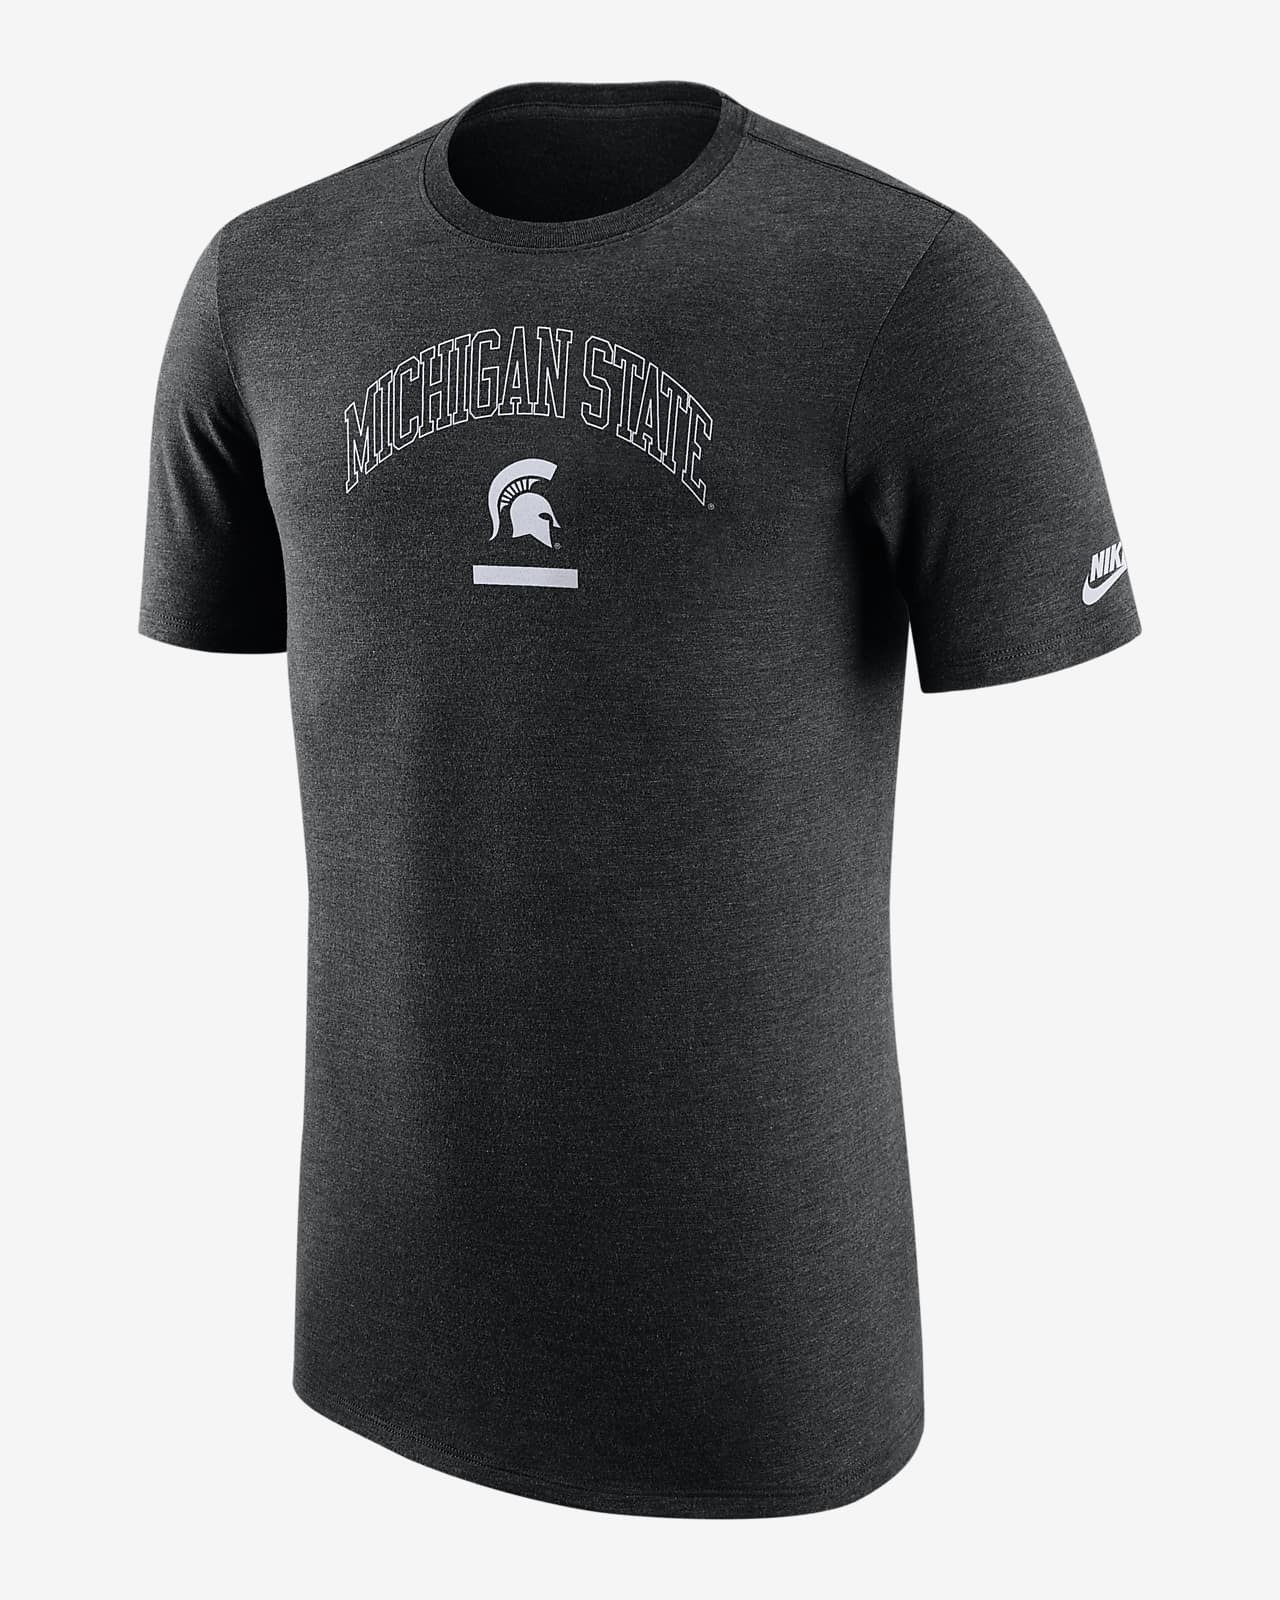 Nike State) Men's T-Shirt. Nike.com